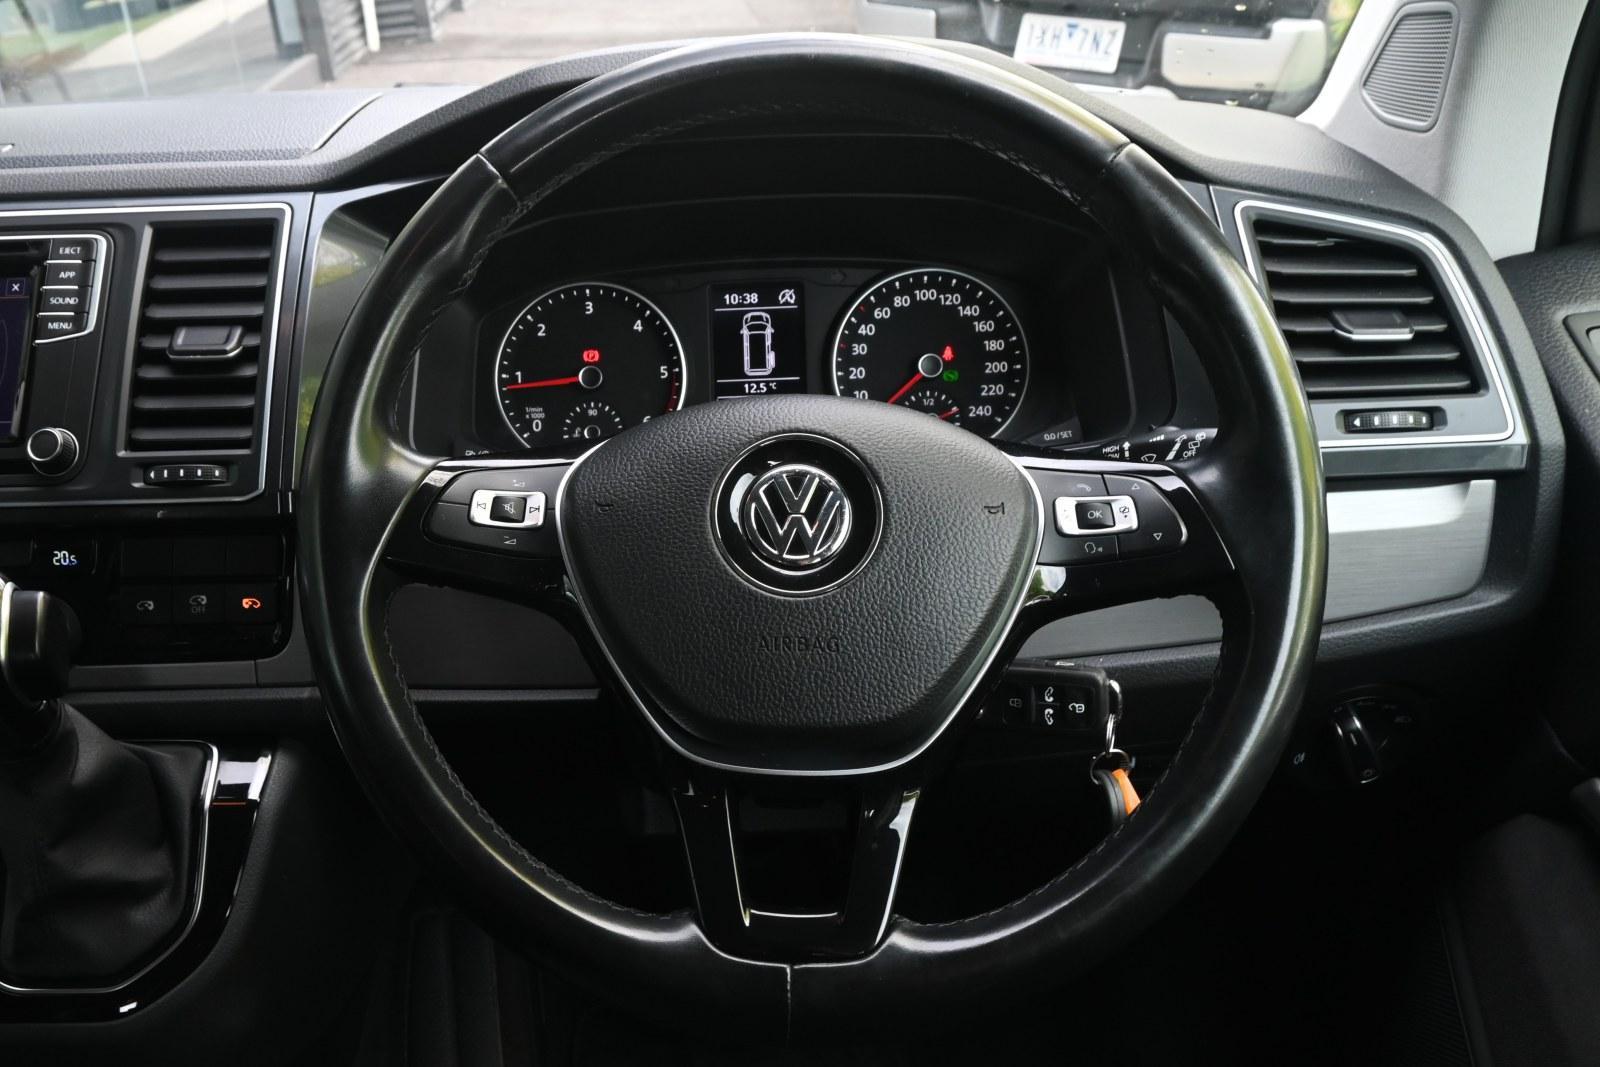 Volkswagen Multivan image 4